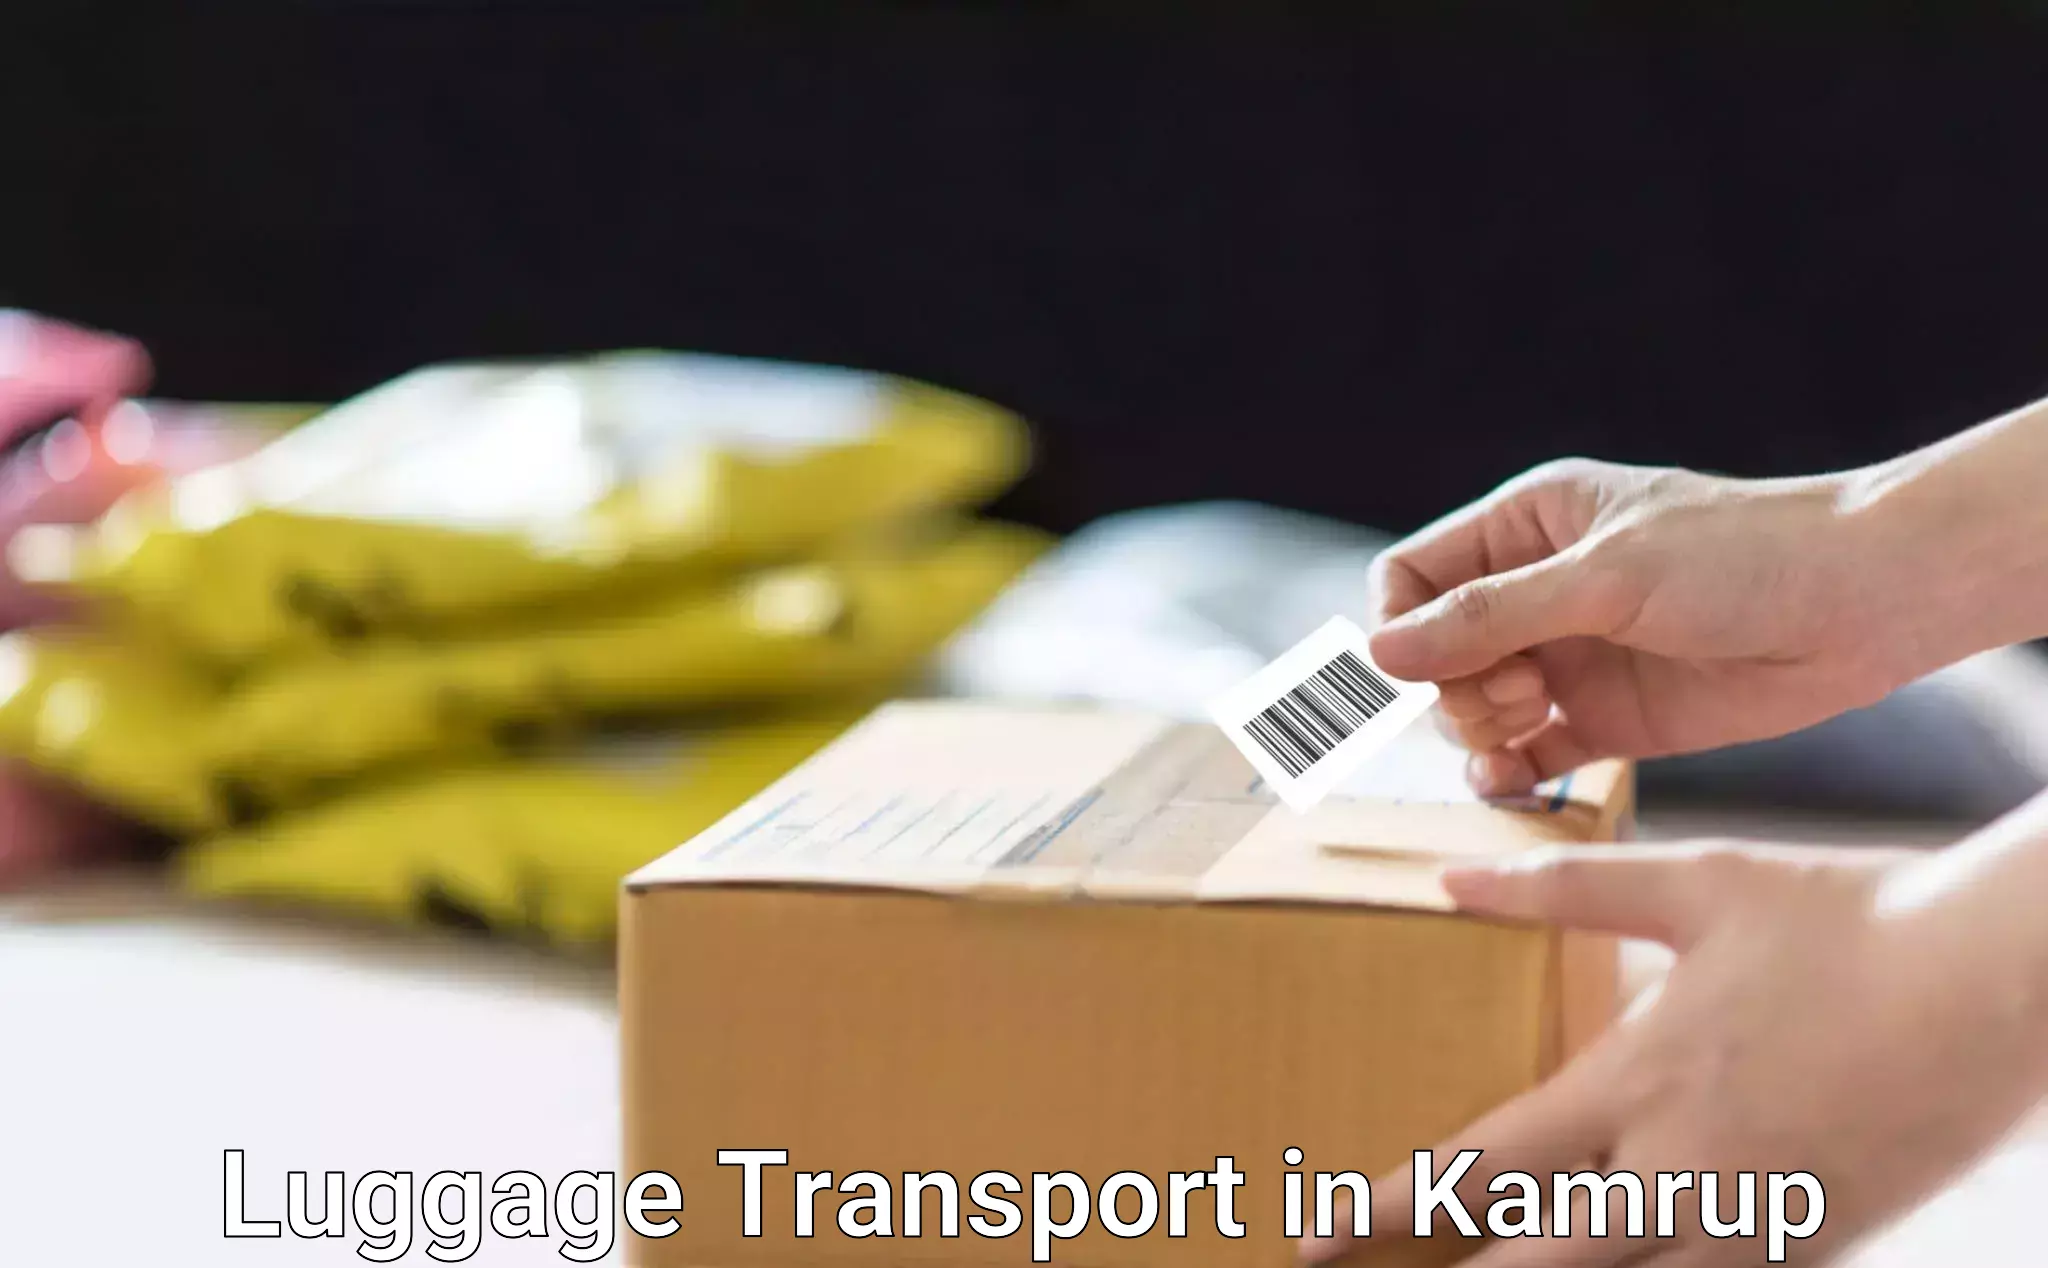 Holiday baggage shipping in Kamrup